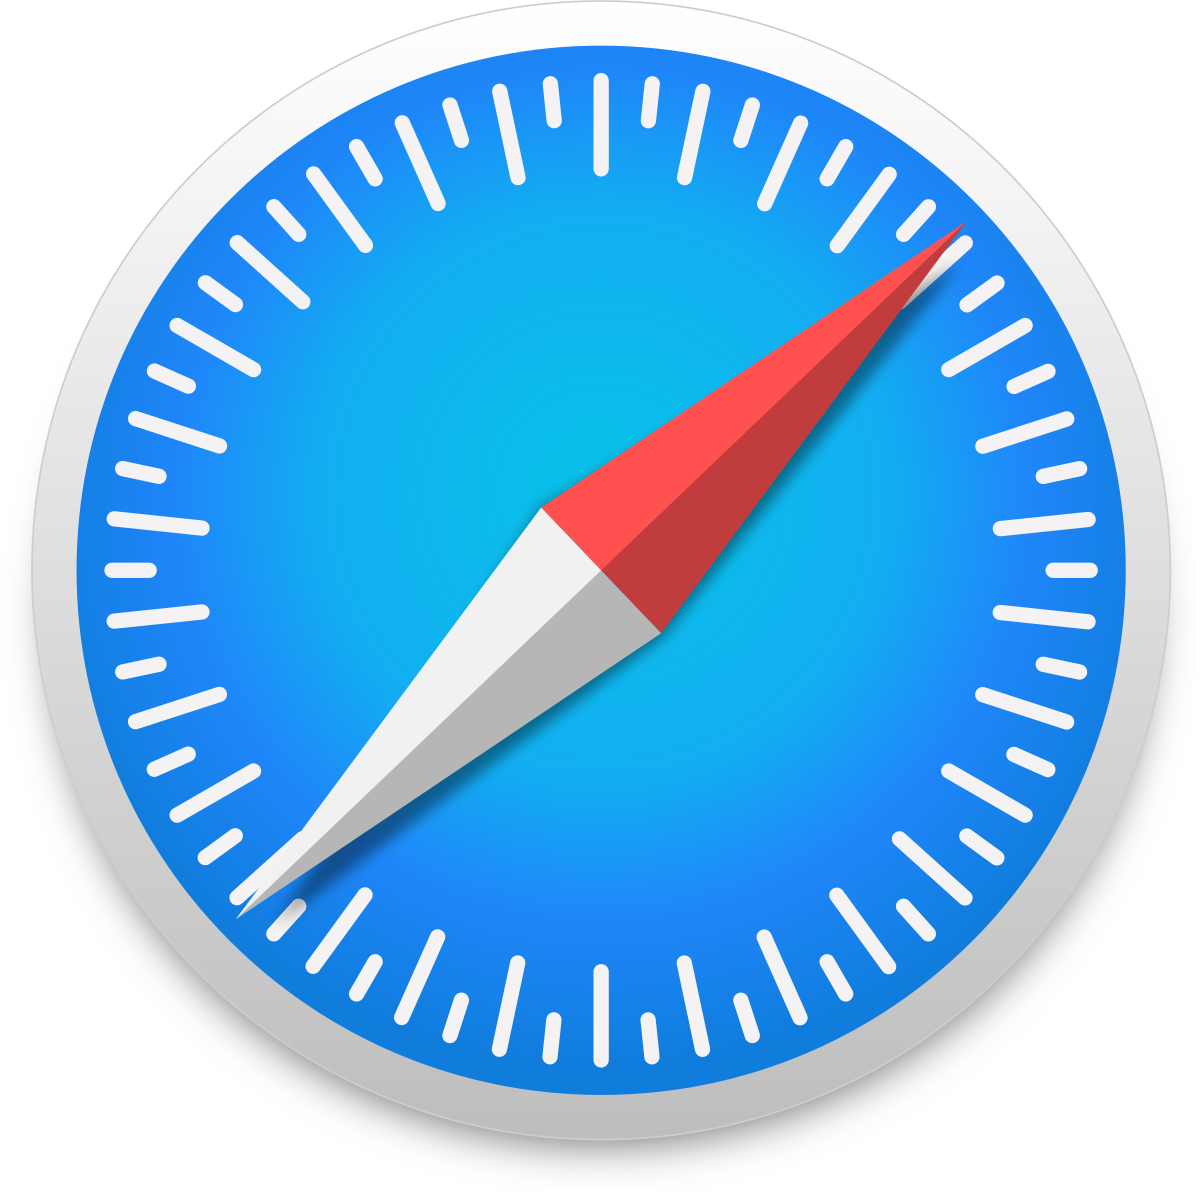 Safari download for mac 10.9 5